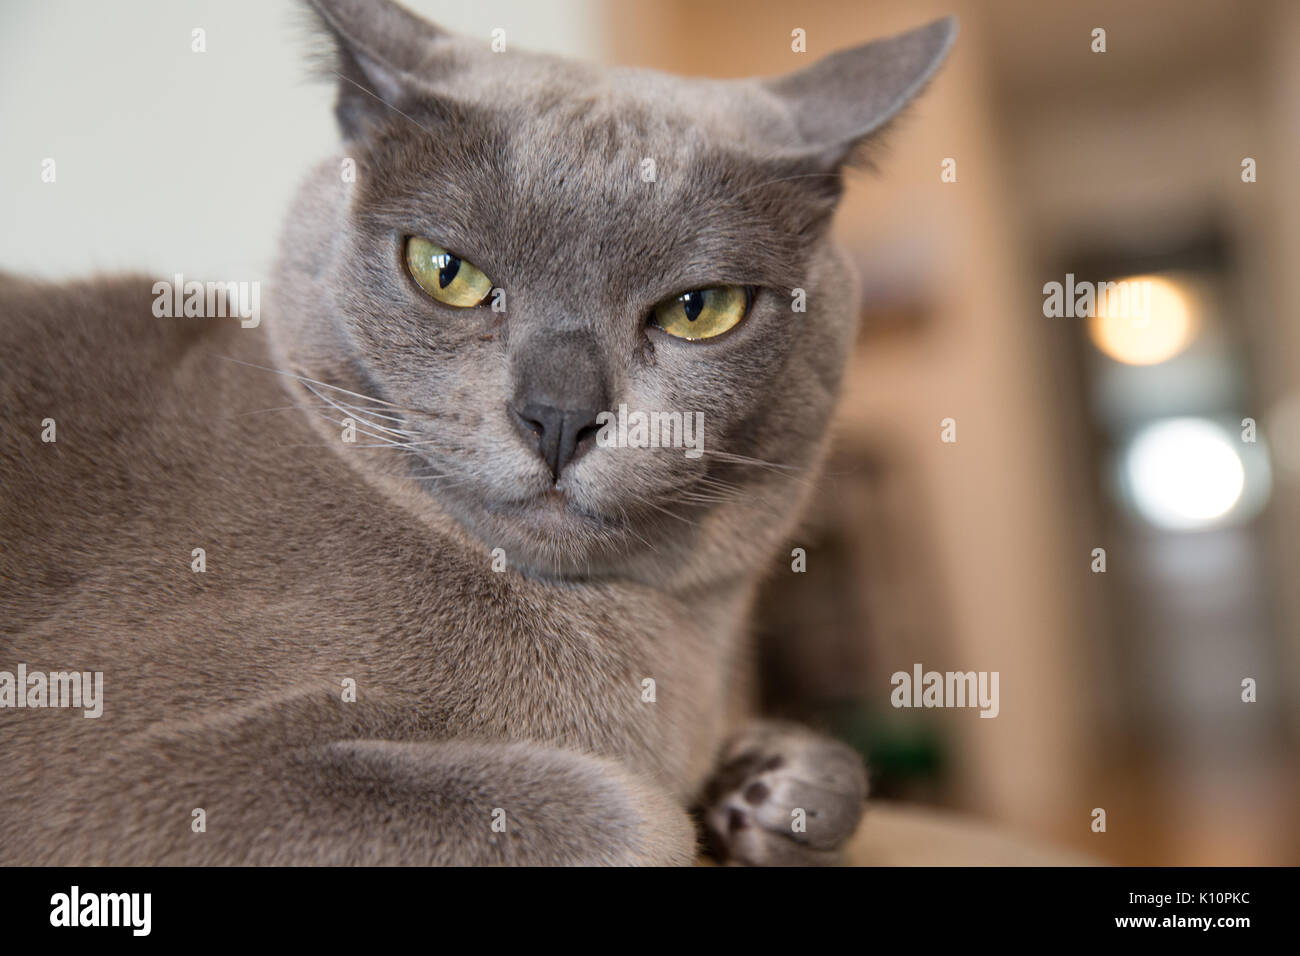 Ritratto del gatto birmano grigio con un'espressione comica e quizzica Foto Stock